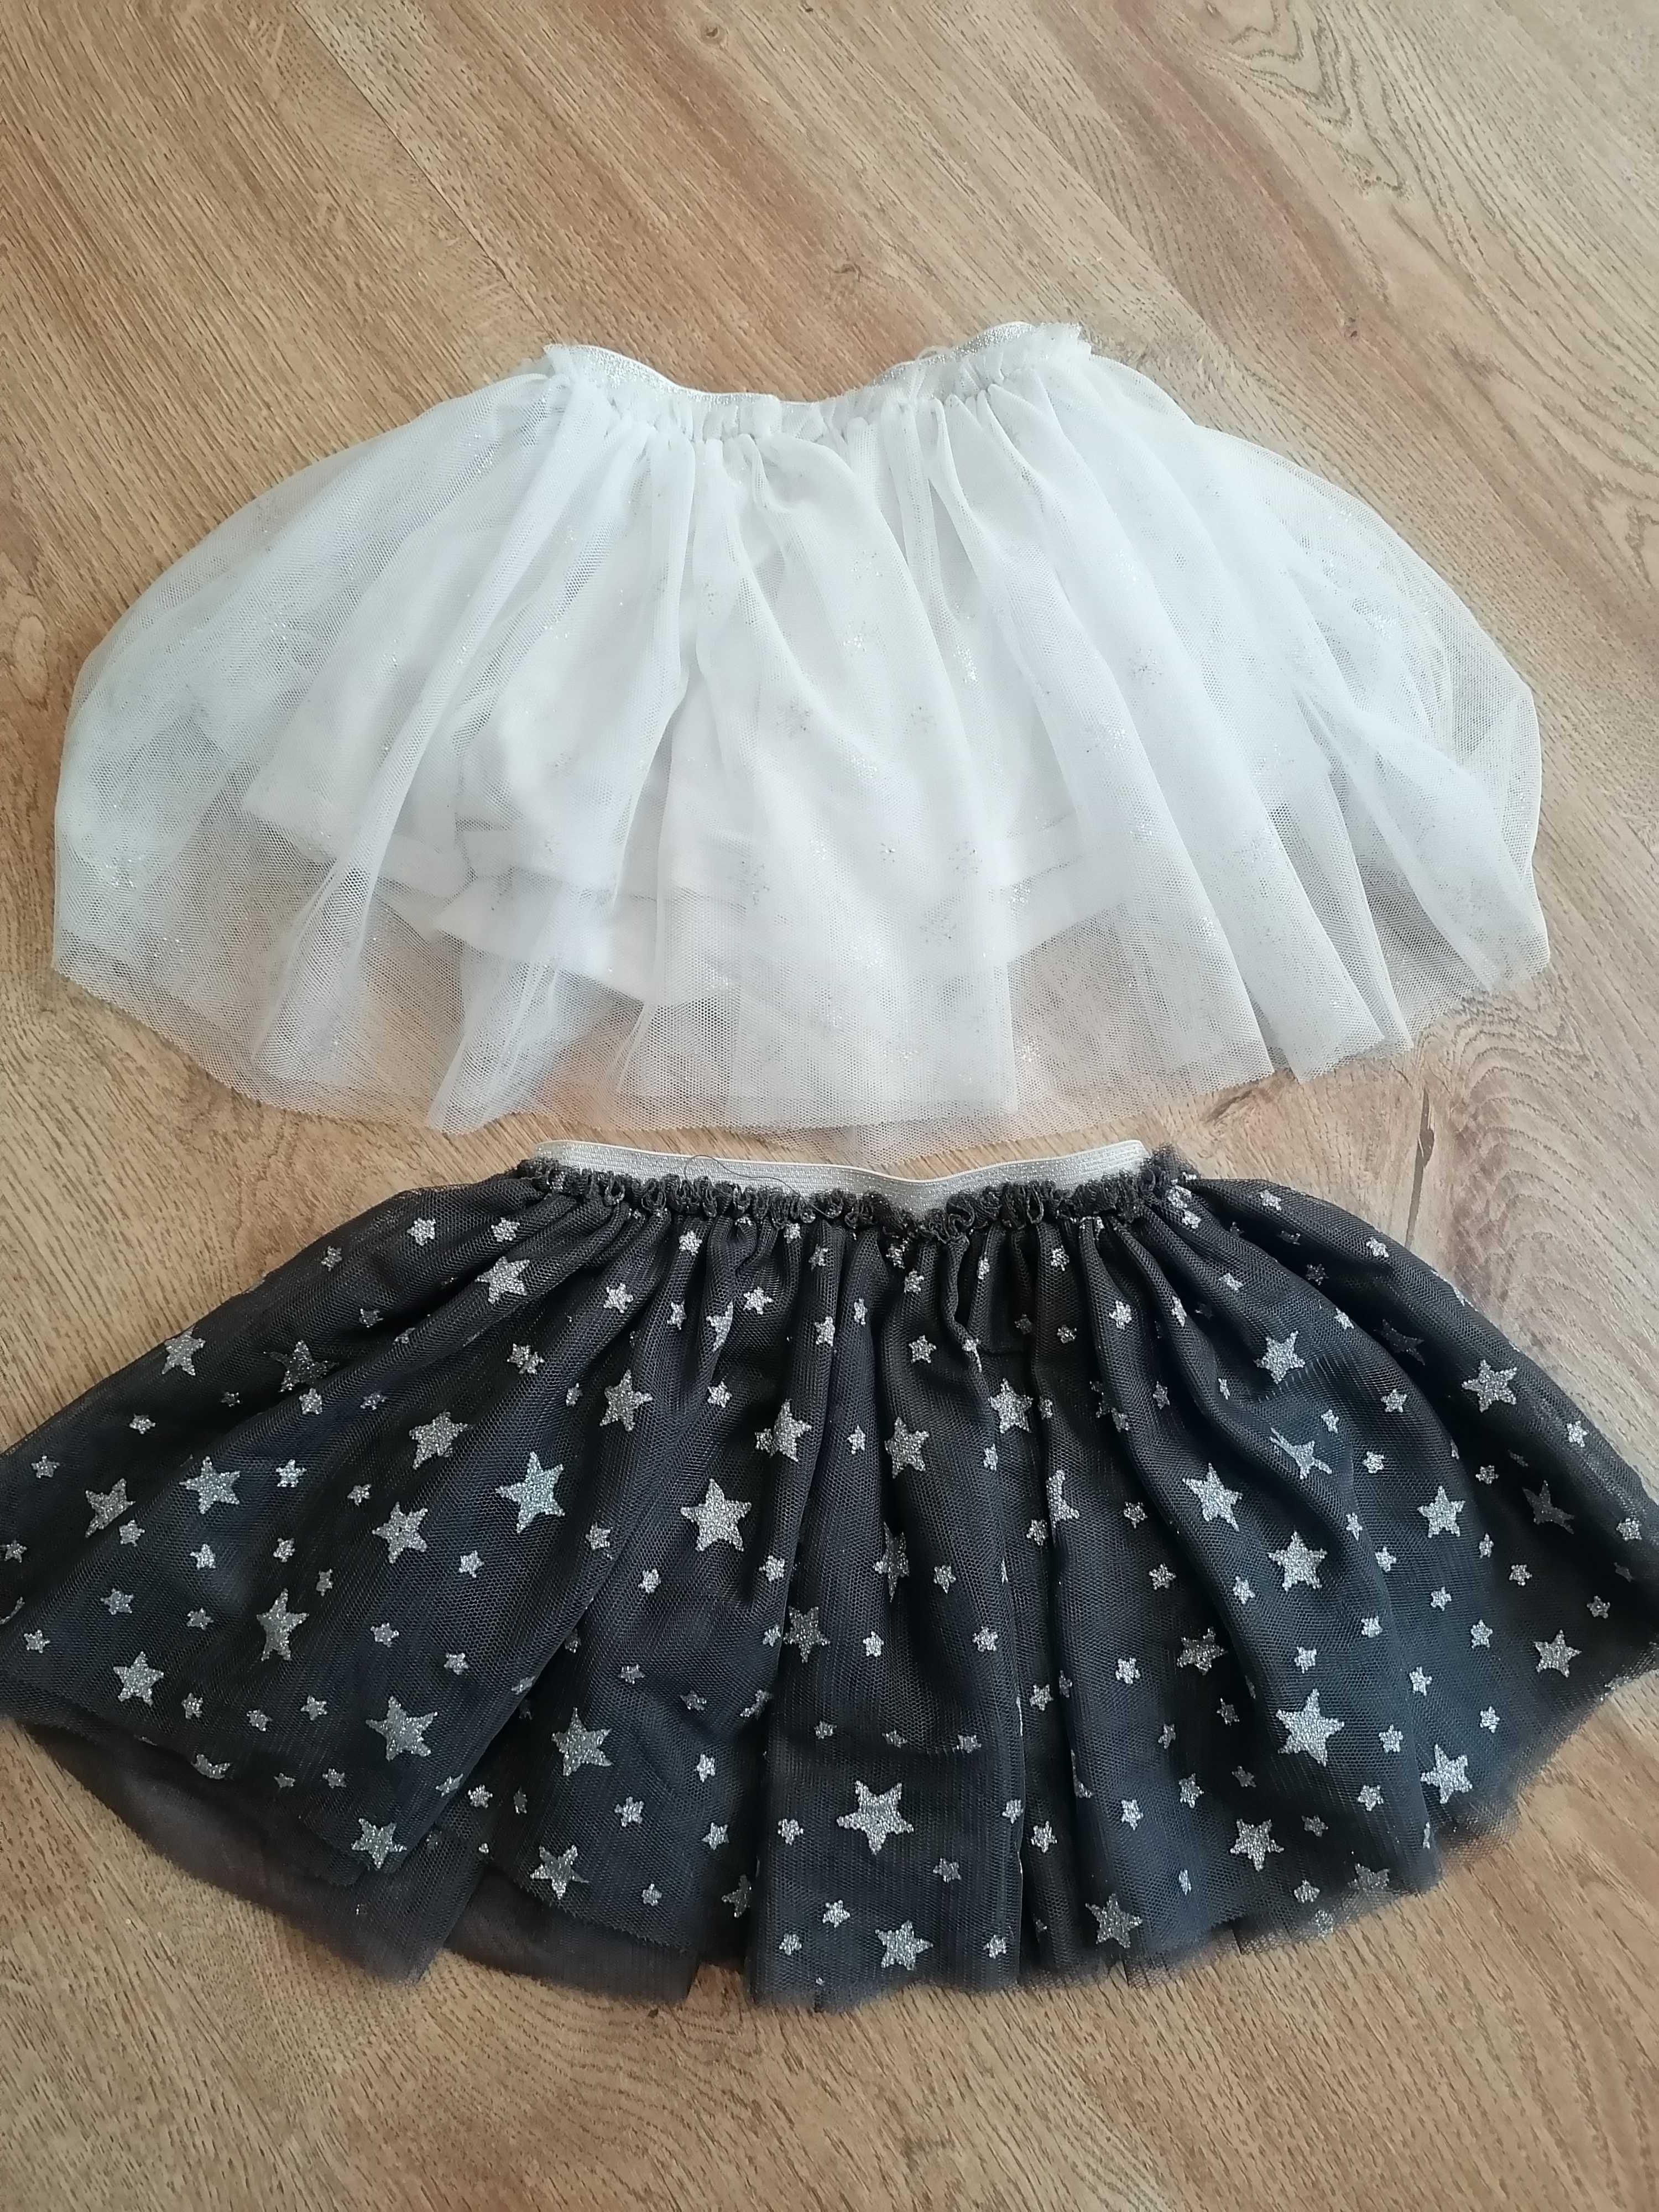 Dwie spódniczki  dla dziewczynki (może dla bliźniaczki)